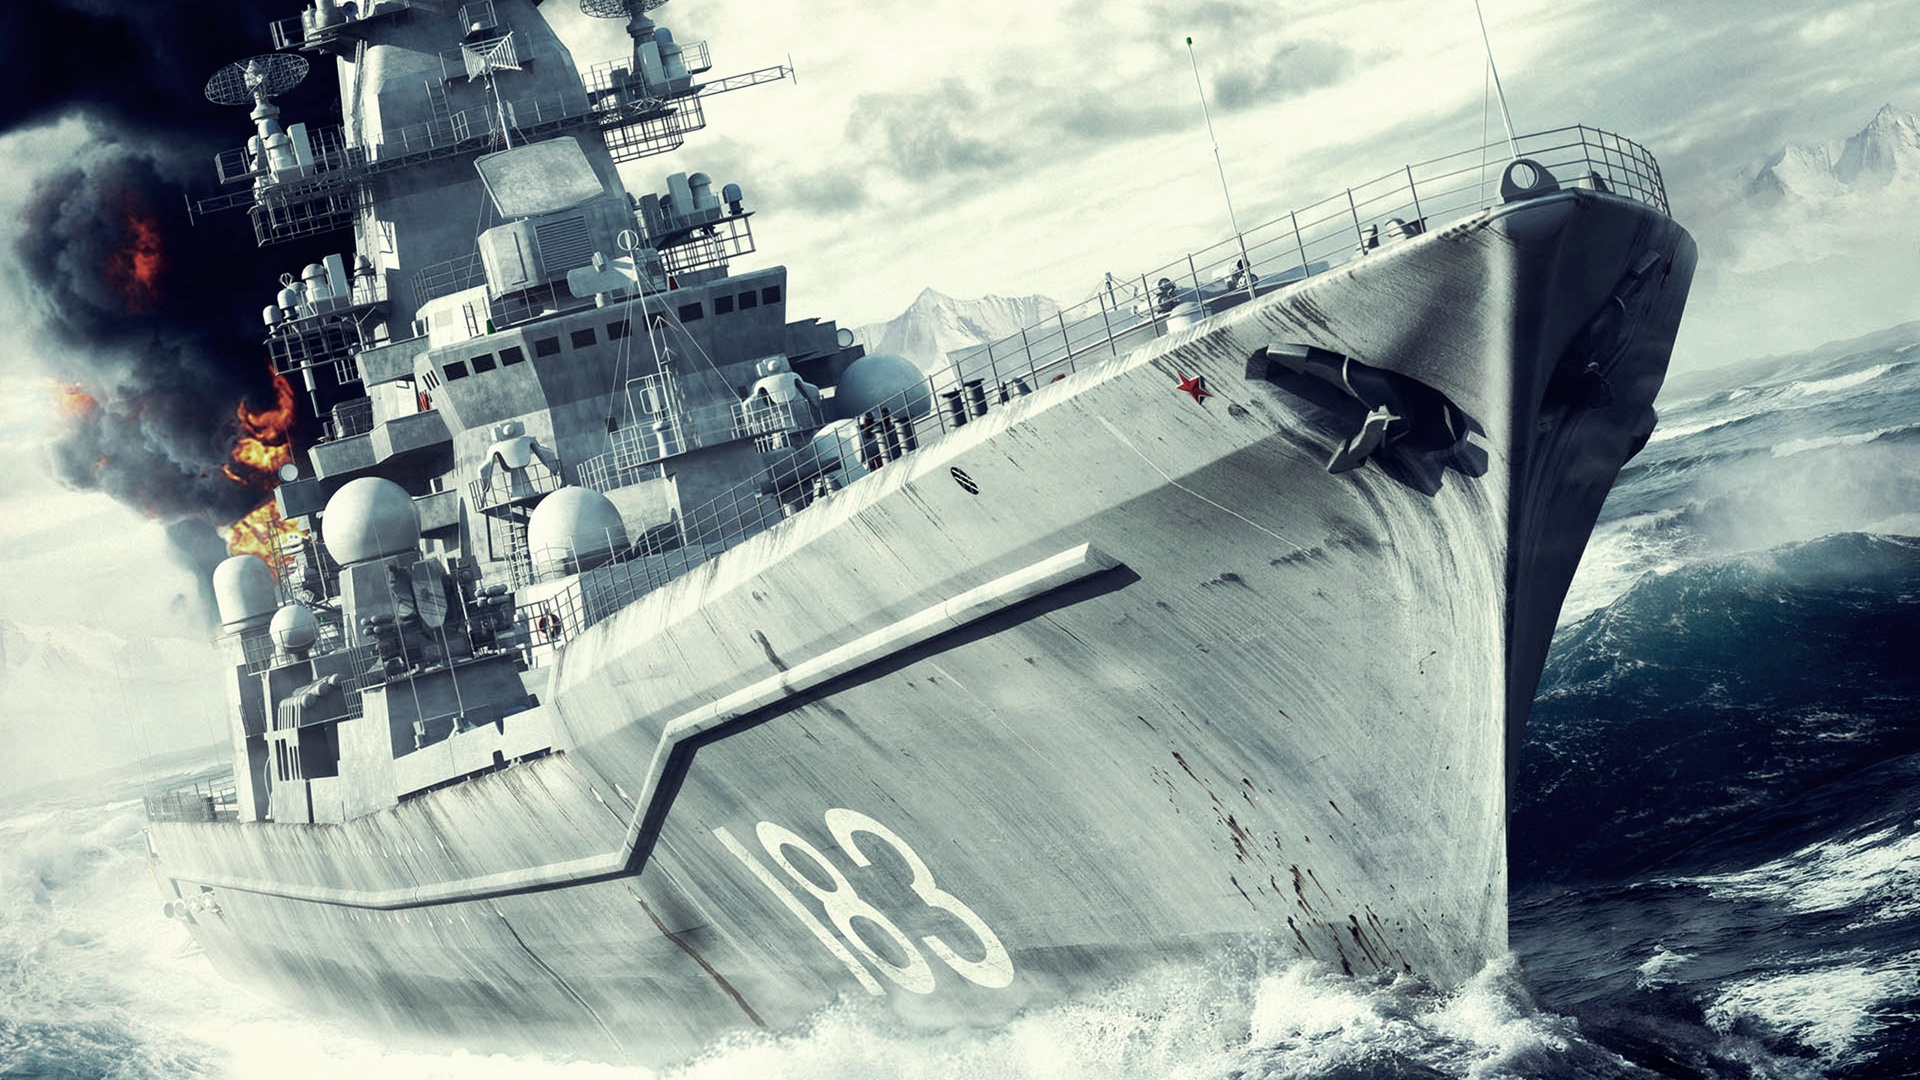 Battleship, Naval Ship, Warship, Battlecruiser, Destroyer. Wallpaper in 1920x1080 Resolution